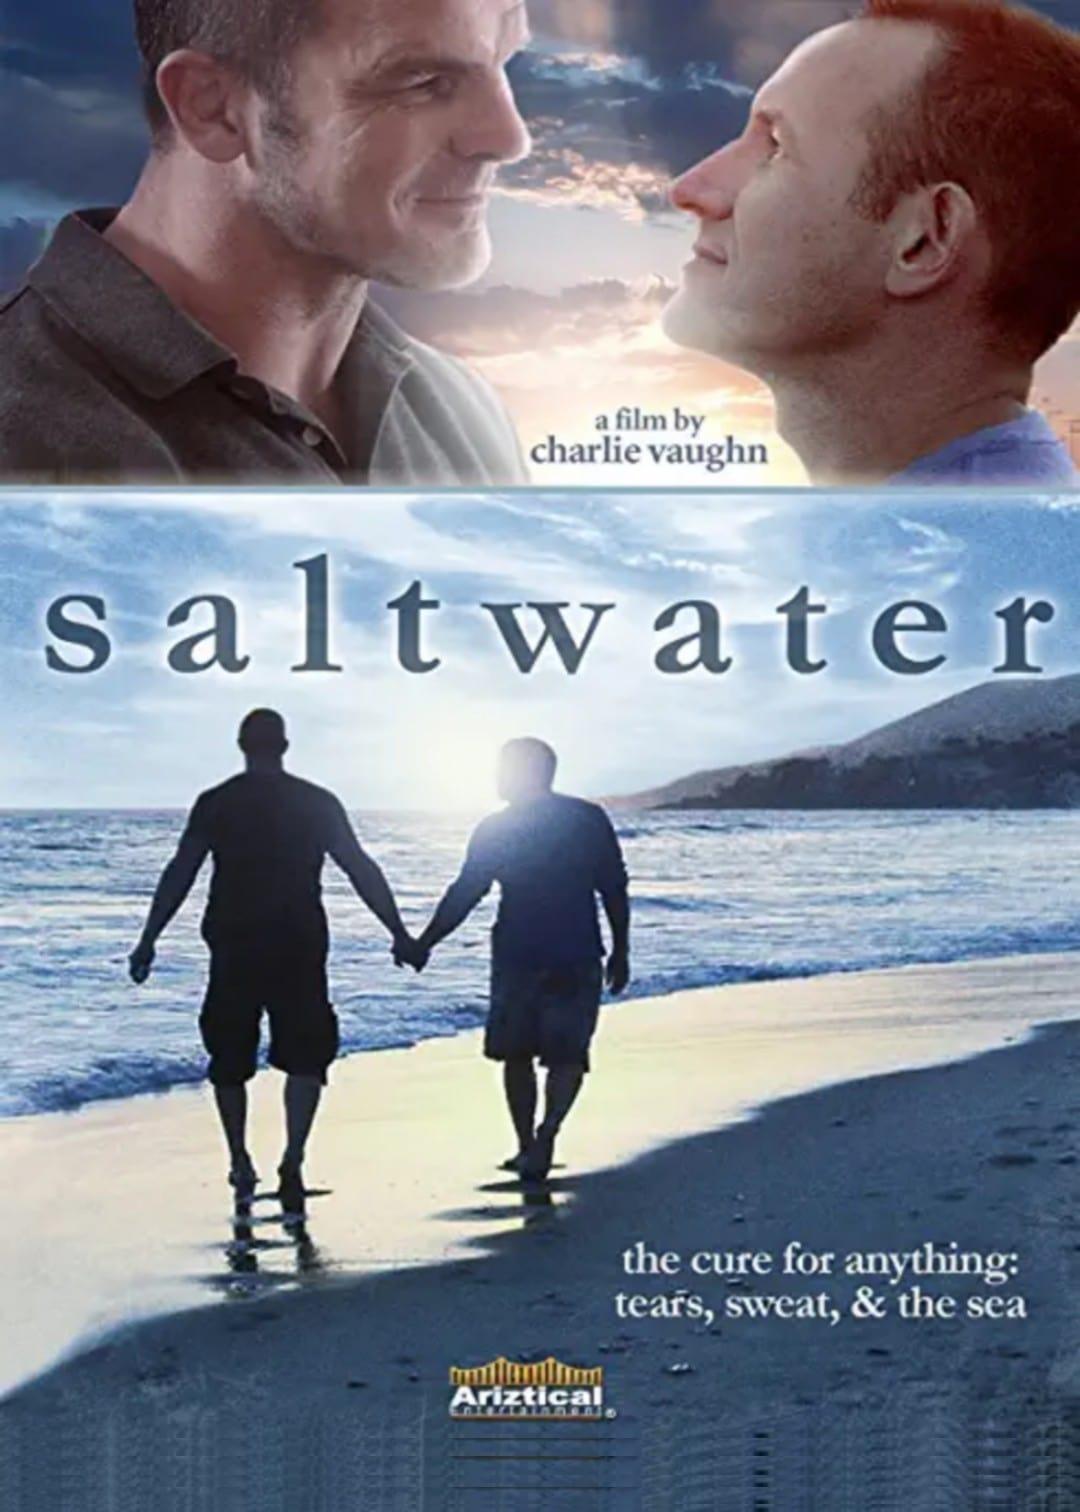 Saltwater poster